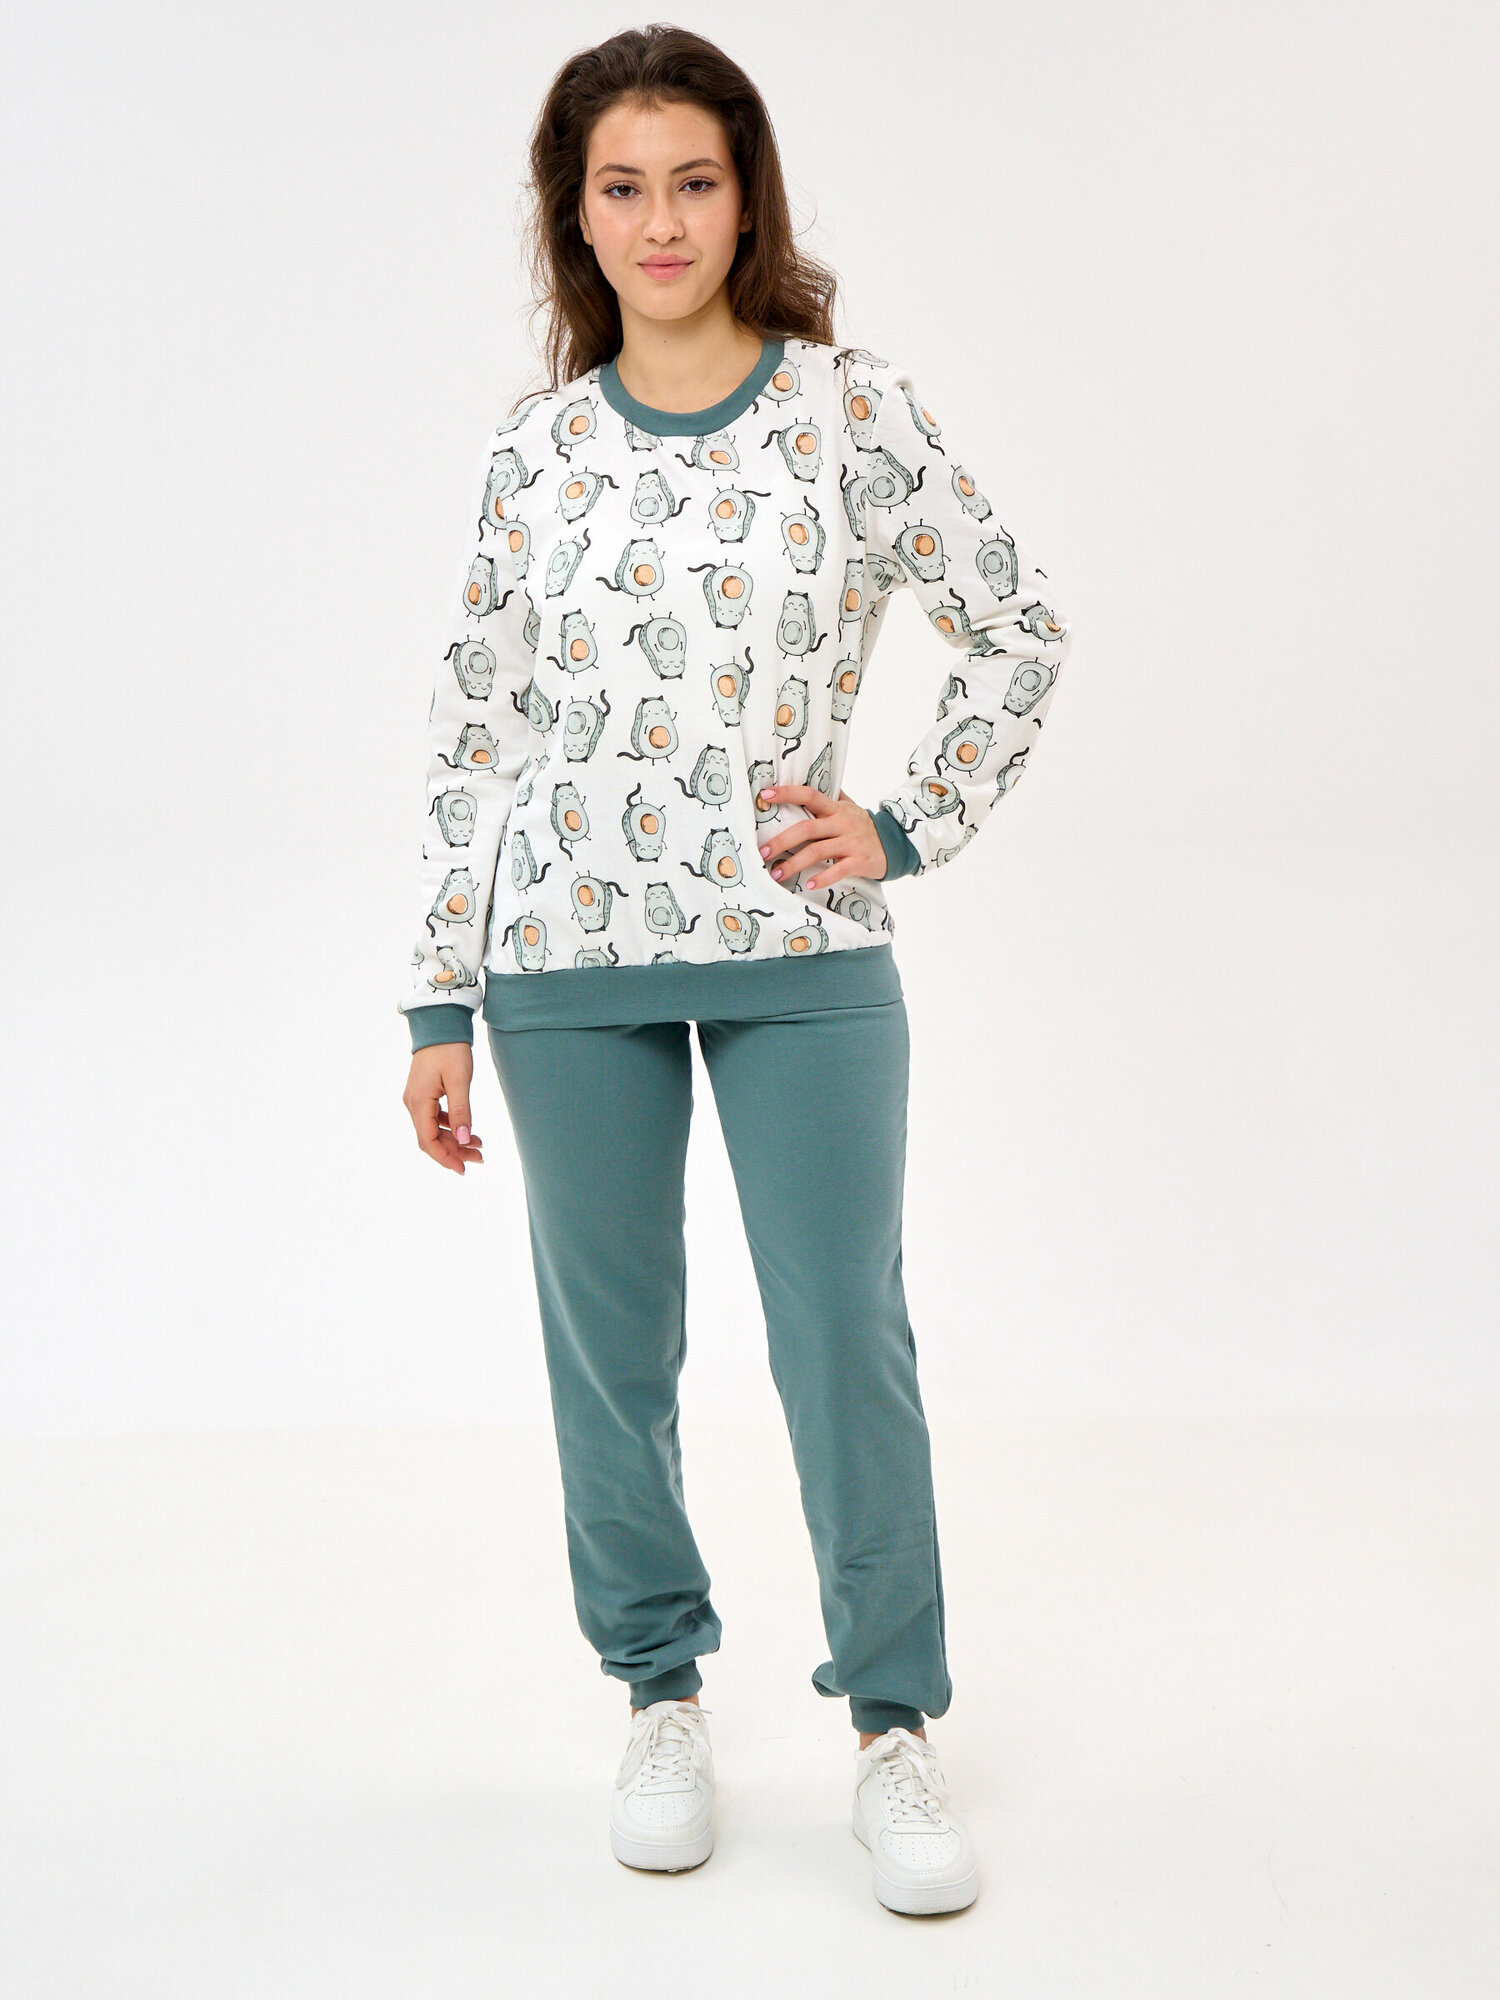 Пижама Монотекс, размер 46, белый, зеленый - фотография № 1